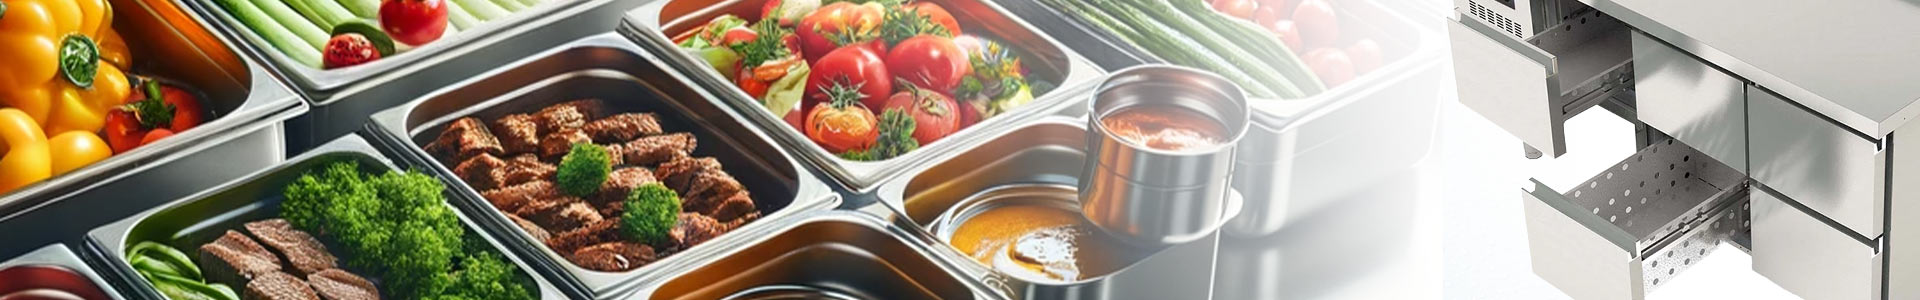 Gastro Khltische mit Schubladen fr eine ordnungsgeme Lagerung und Hygiene der Lebensmittel